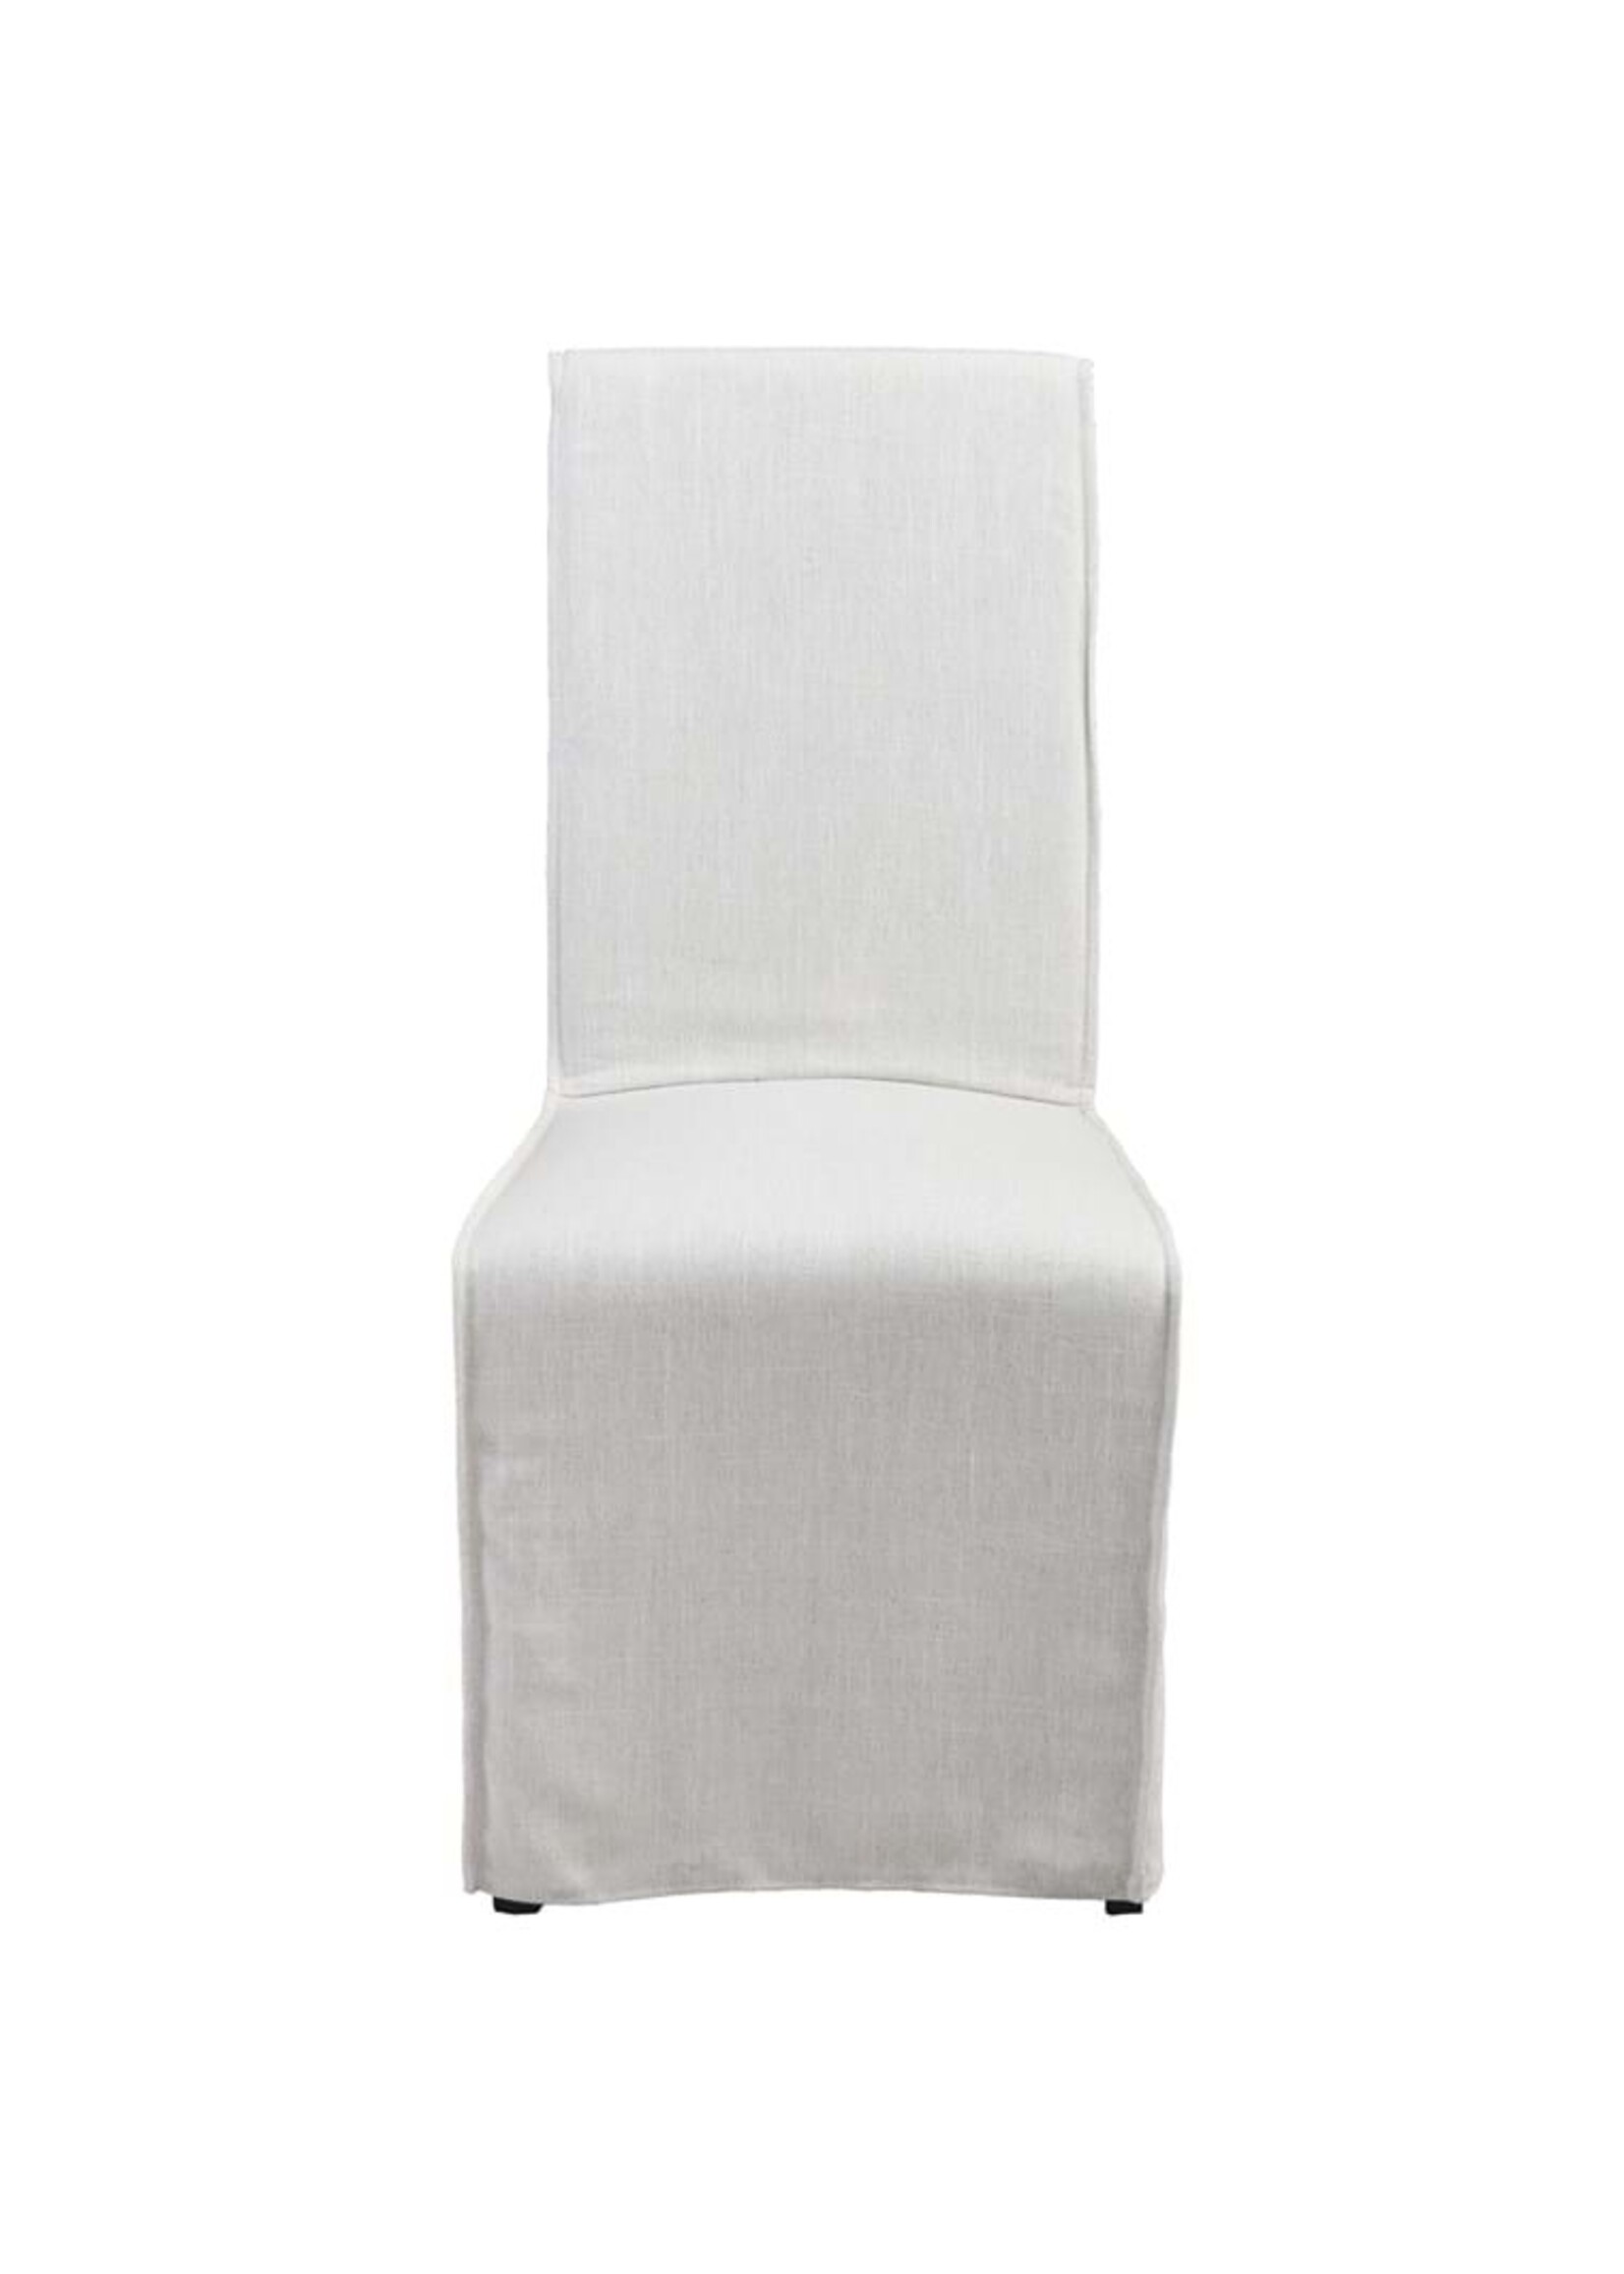 Jordan Upholstered Dining Chair-White